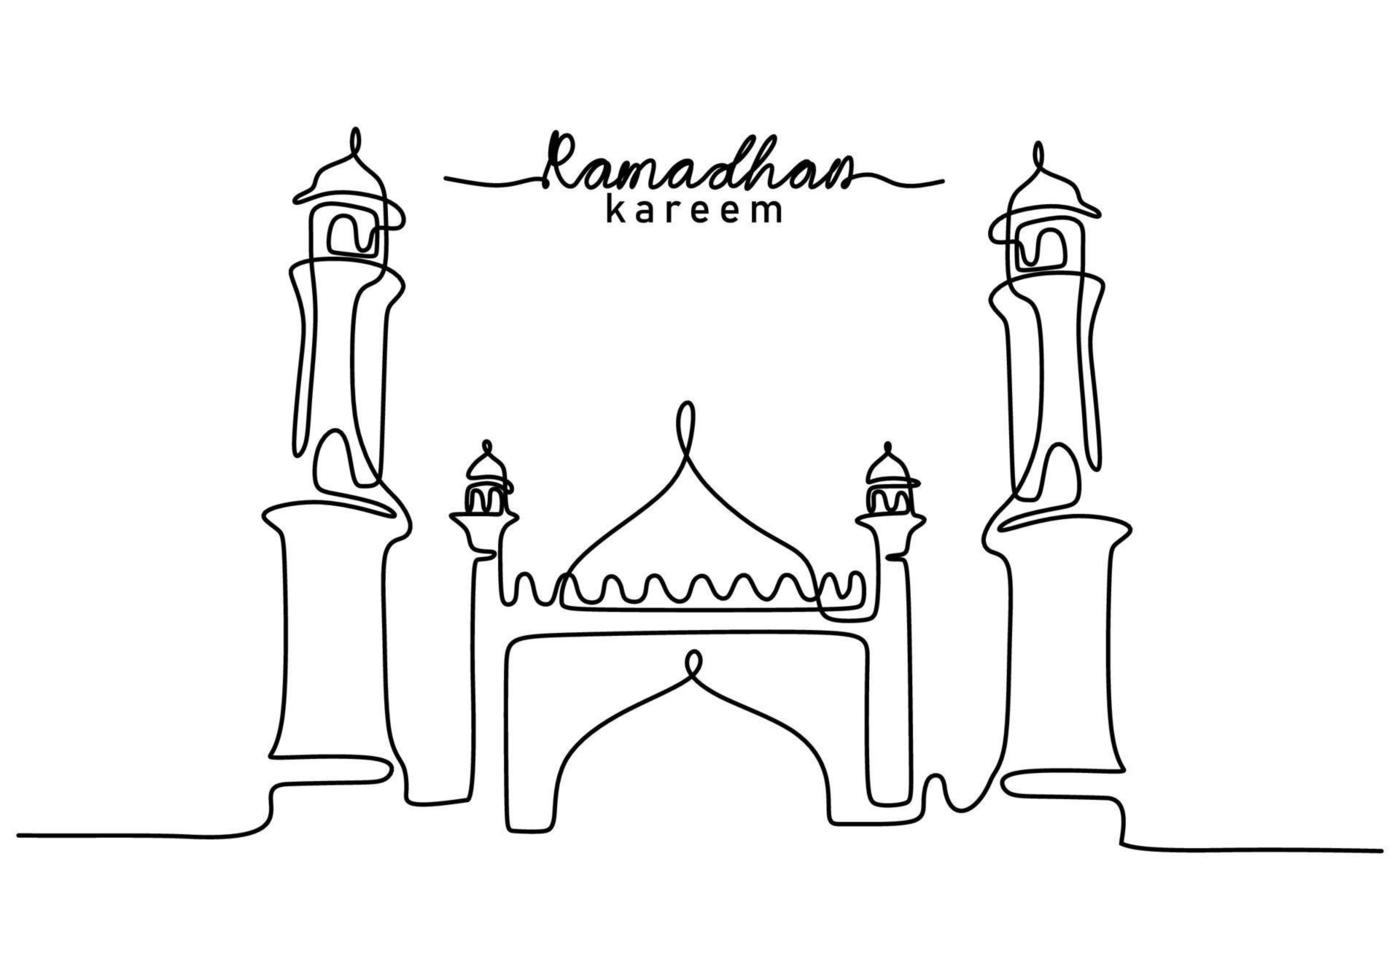 één ononderbroken enkele lijn van grote moskee met ramadan kareem-woord vector